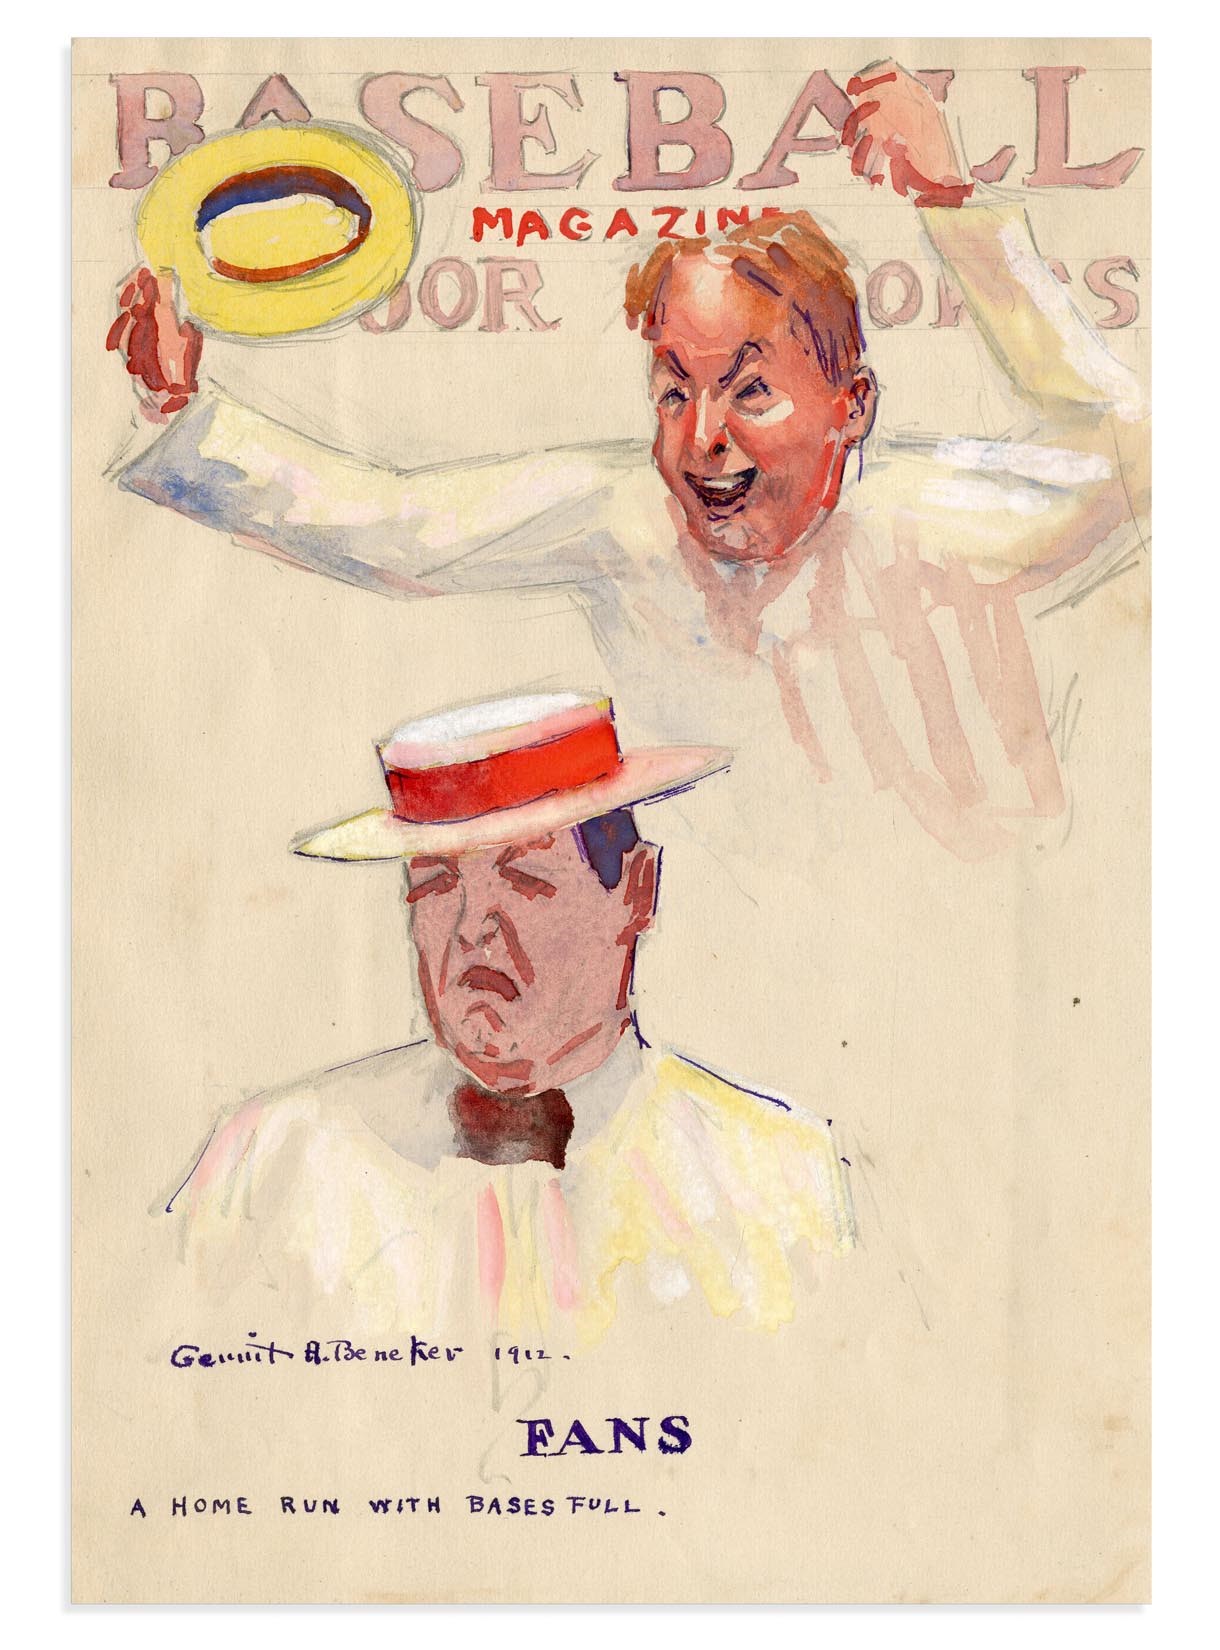 - 1912 Baseball Magazine "Fans" Cover Art Study by Gerrit Beneker (1882-1934)